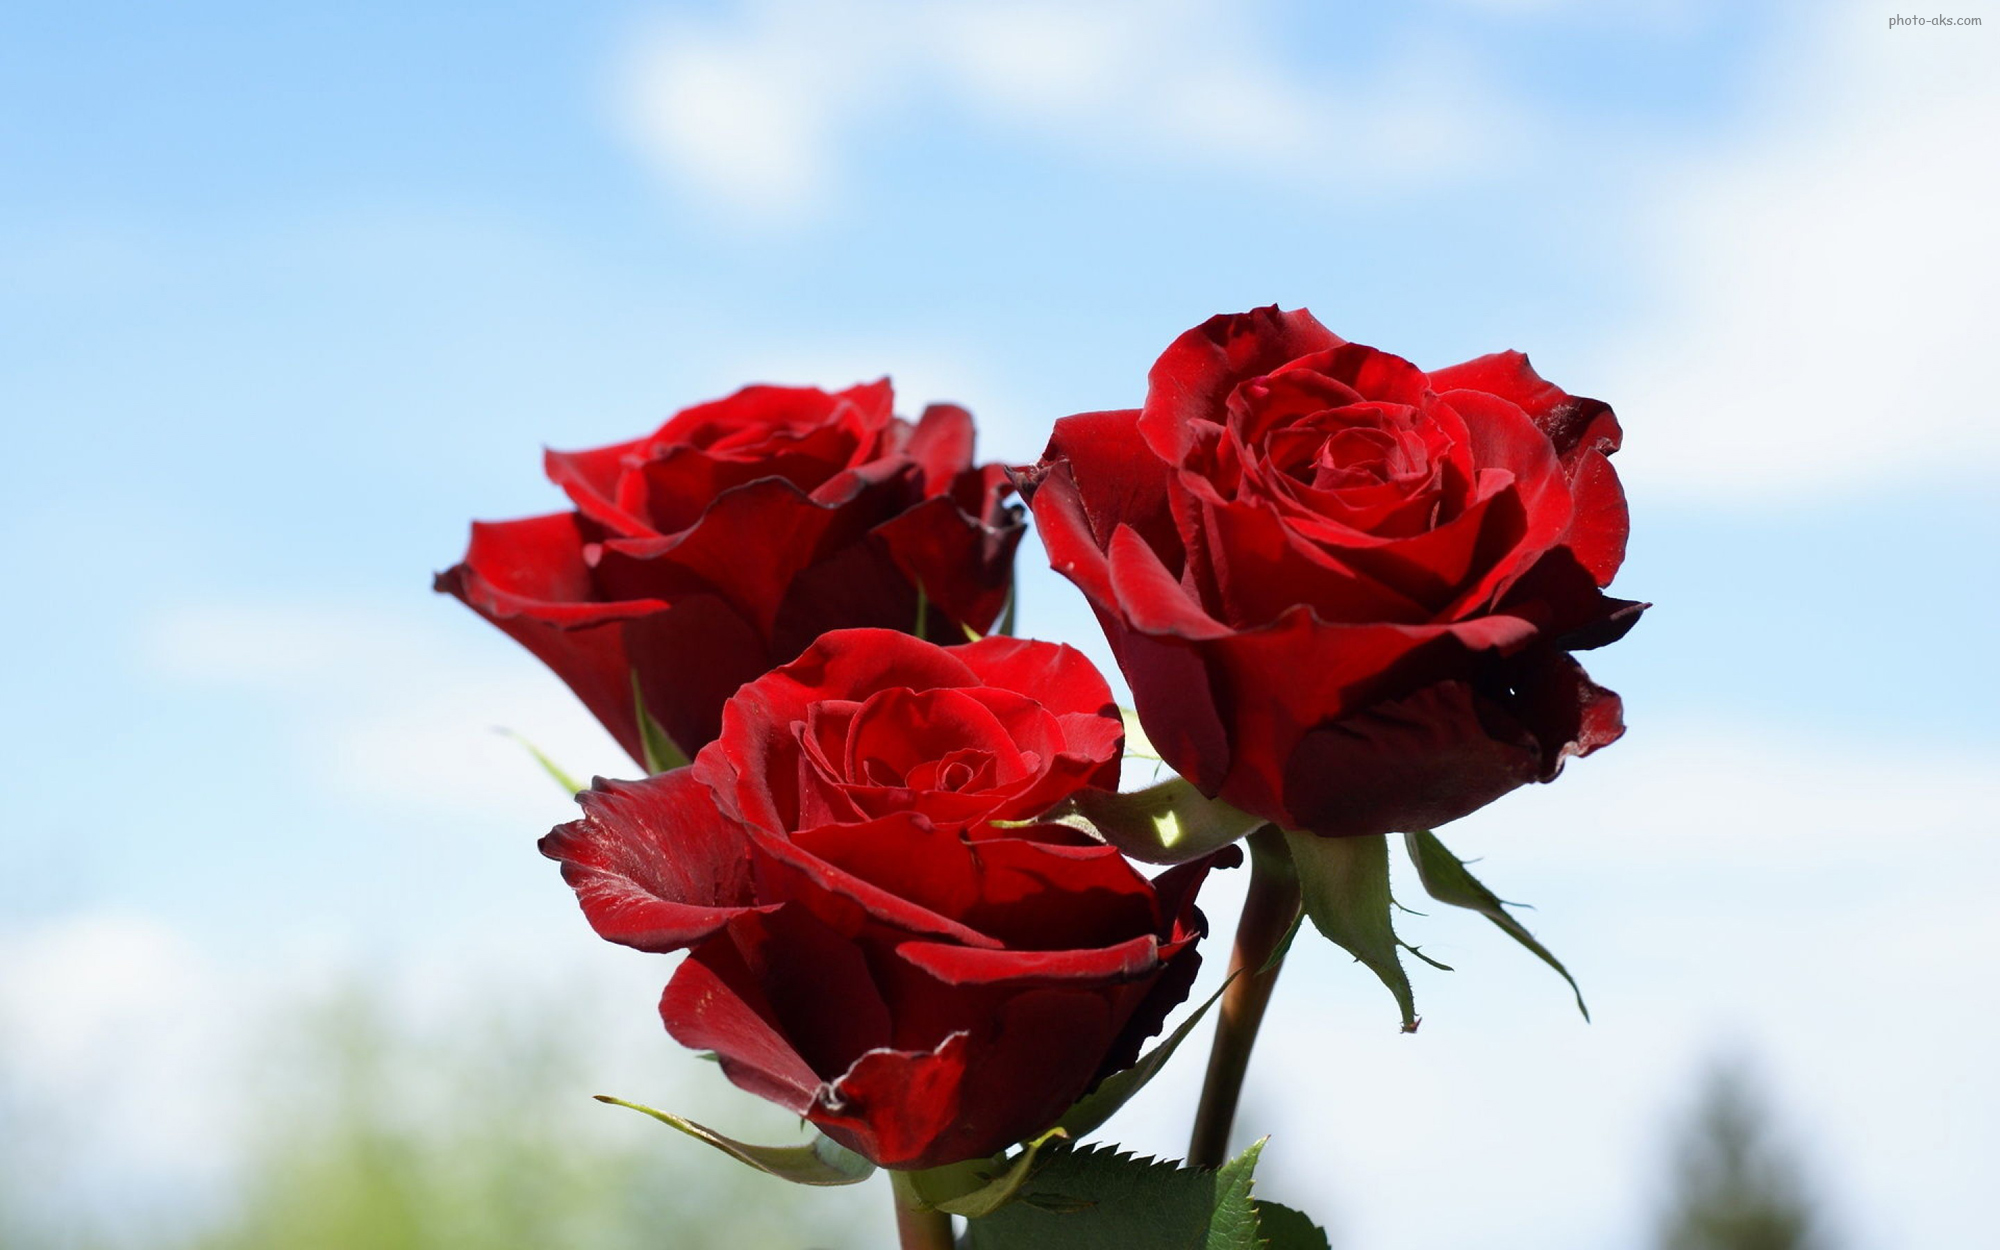 ,گل روز سرخ ، کل رز ، گلهای رز قشنگ و خوشگل ، بزرگترین سایت گل رز قرمز ، gole roz ziba germez ،  goleh roz sorkh،  rose flower wallpaperفتوعکس | photo-aks,[categoriy]